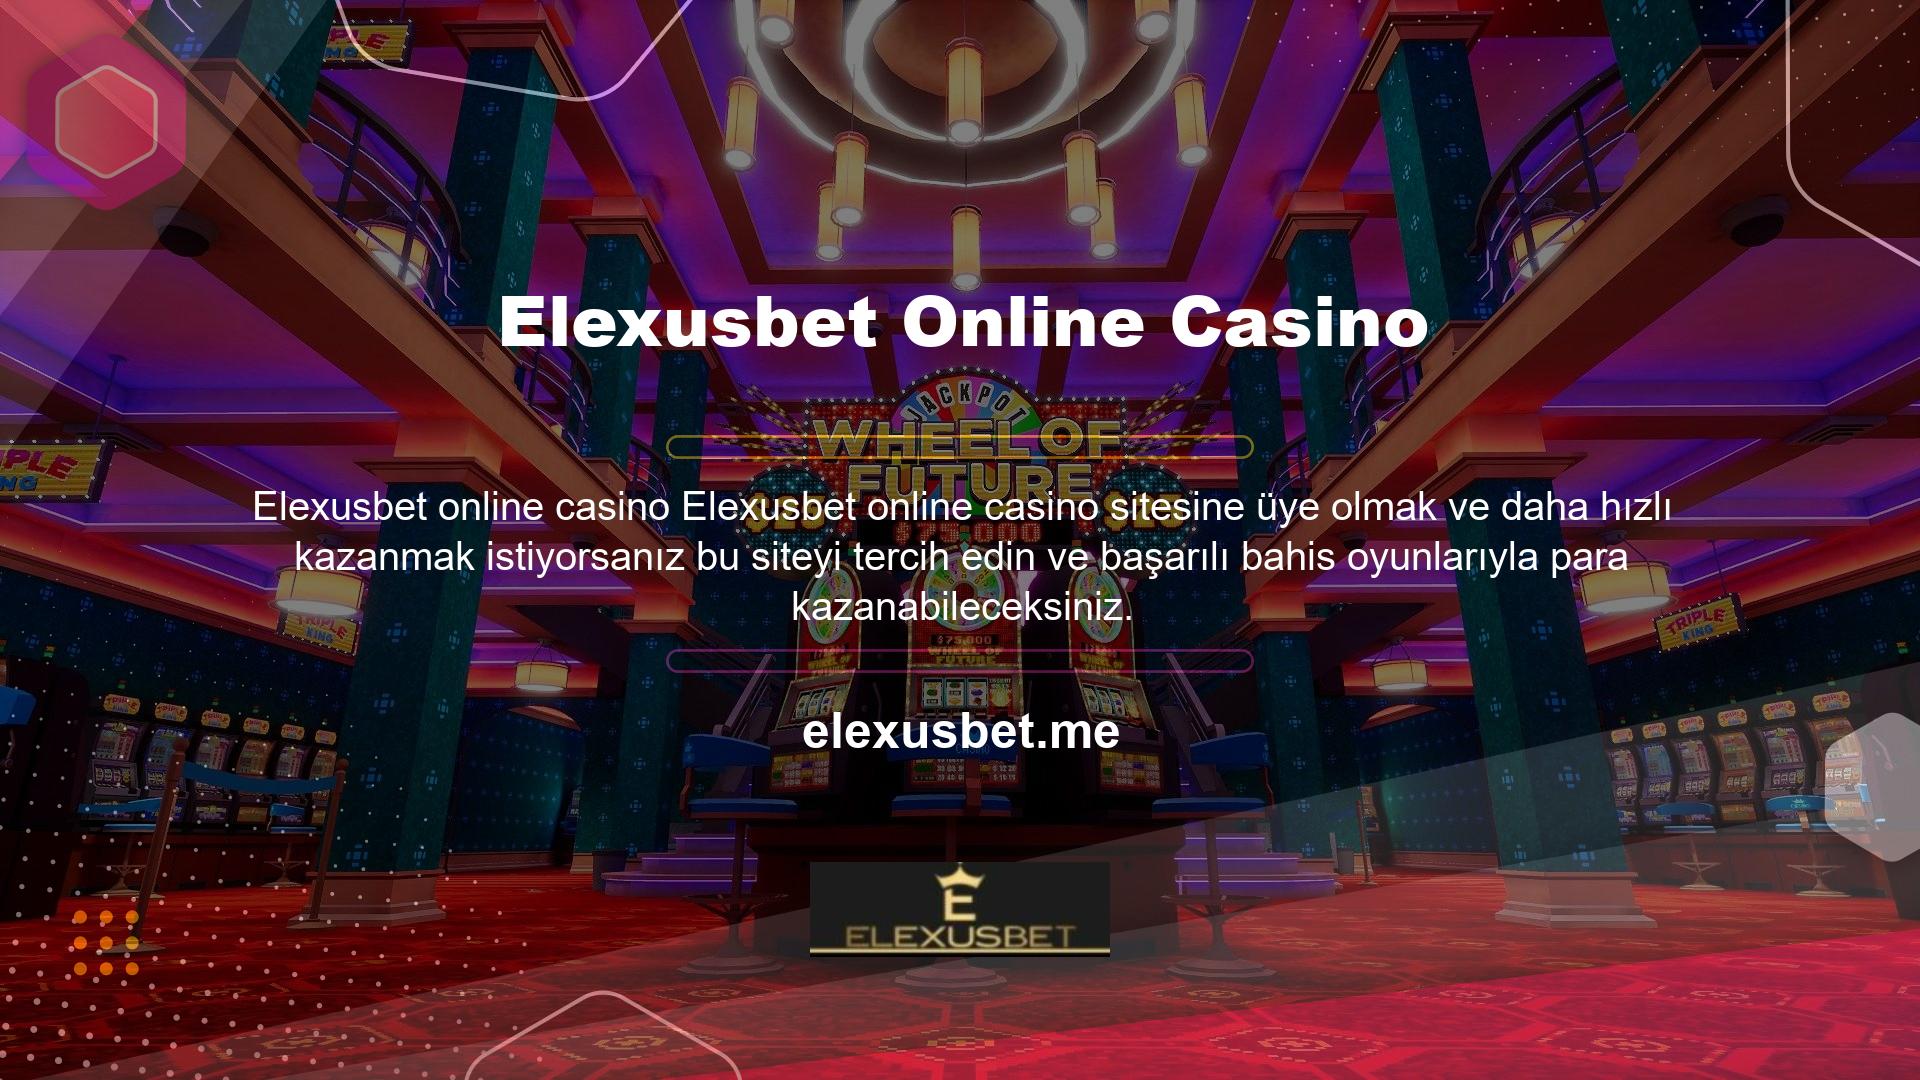 Elexusbet Yasadışı Talep sitesinde birçok sanal oyun ve çeşitli sanal oyunların yanı sıra, site üyelerinin ve casino meraklılarının para kazanmasına yardımcı olan nakit avans ve bahis indirimleriyle çok sayıda yasa dışı bahis de bulunmaktadır